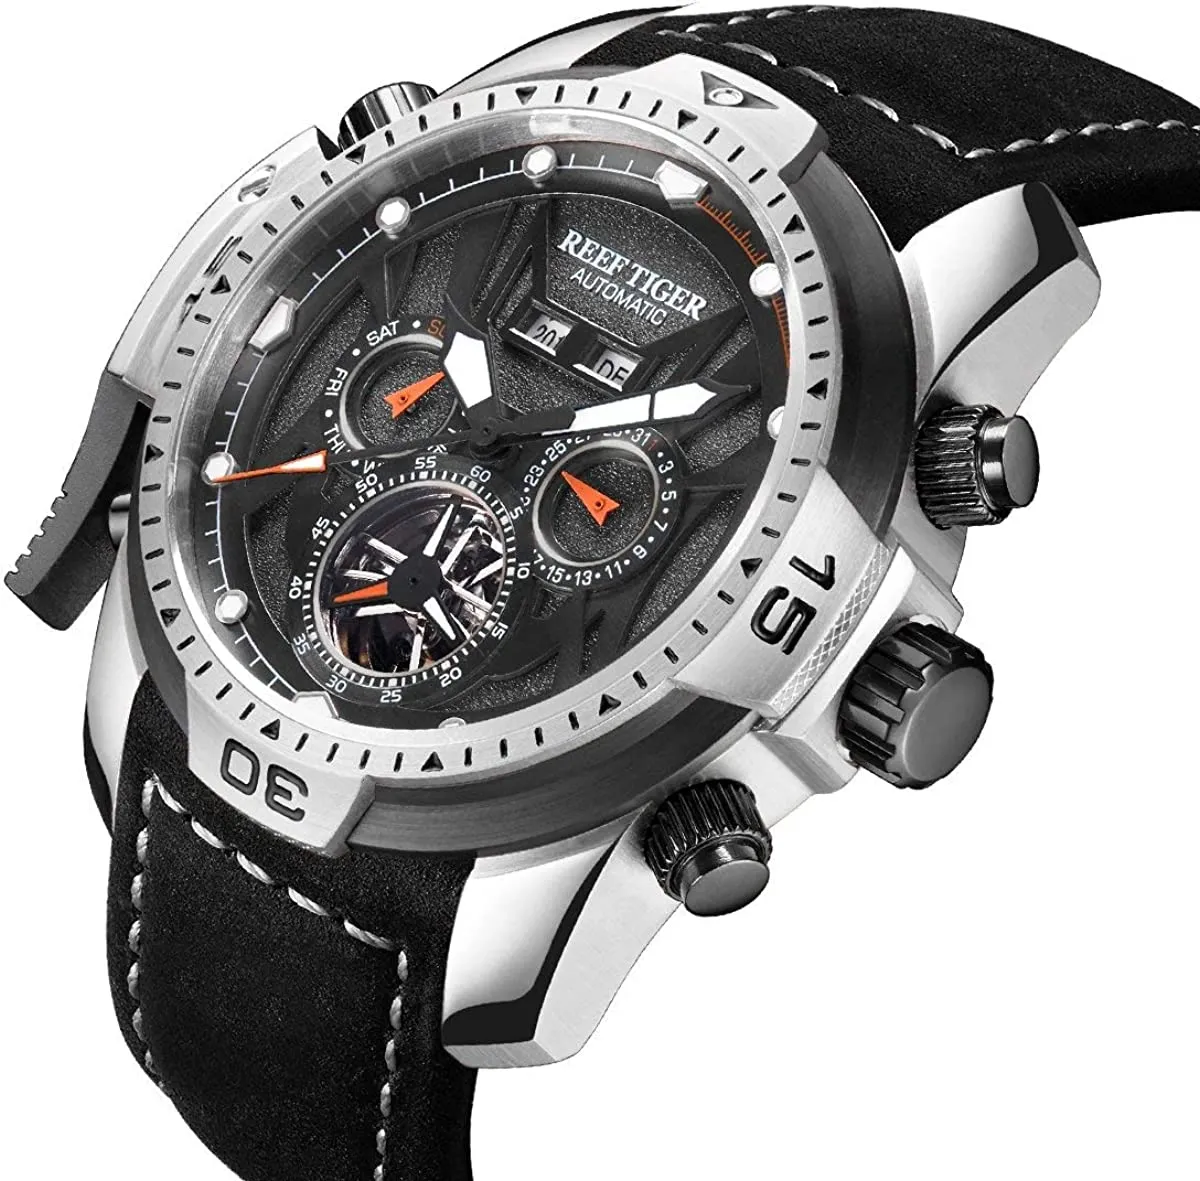 Reef Tiger Mens Sport relógios de aço inoxidável relógios automáticos relógios militares pulseira de couro